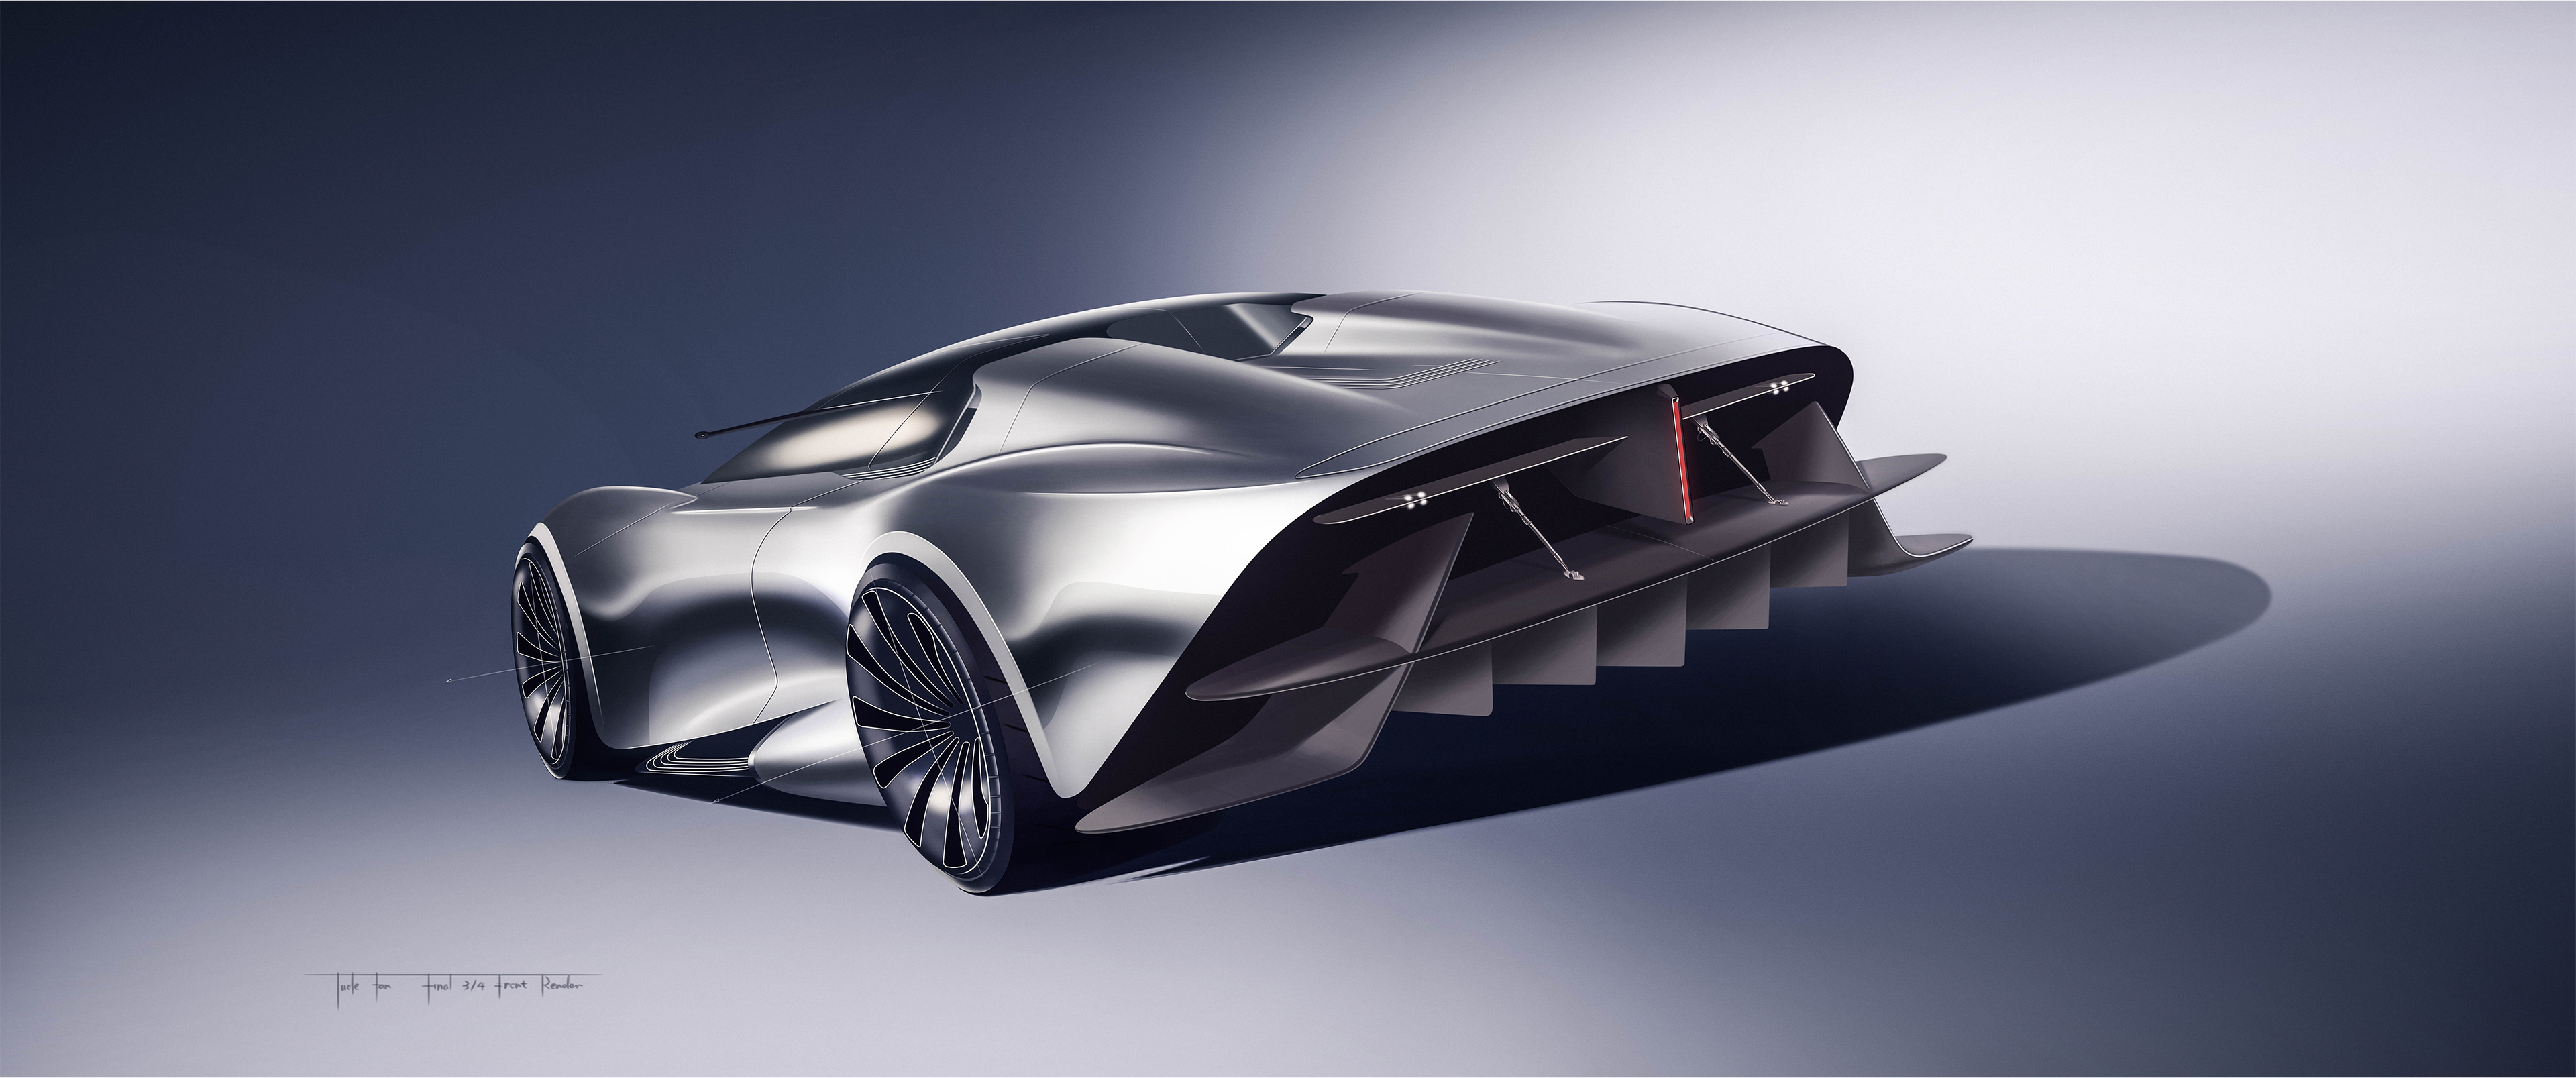 酷奔驰混合动力超级跑车设计